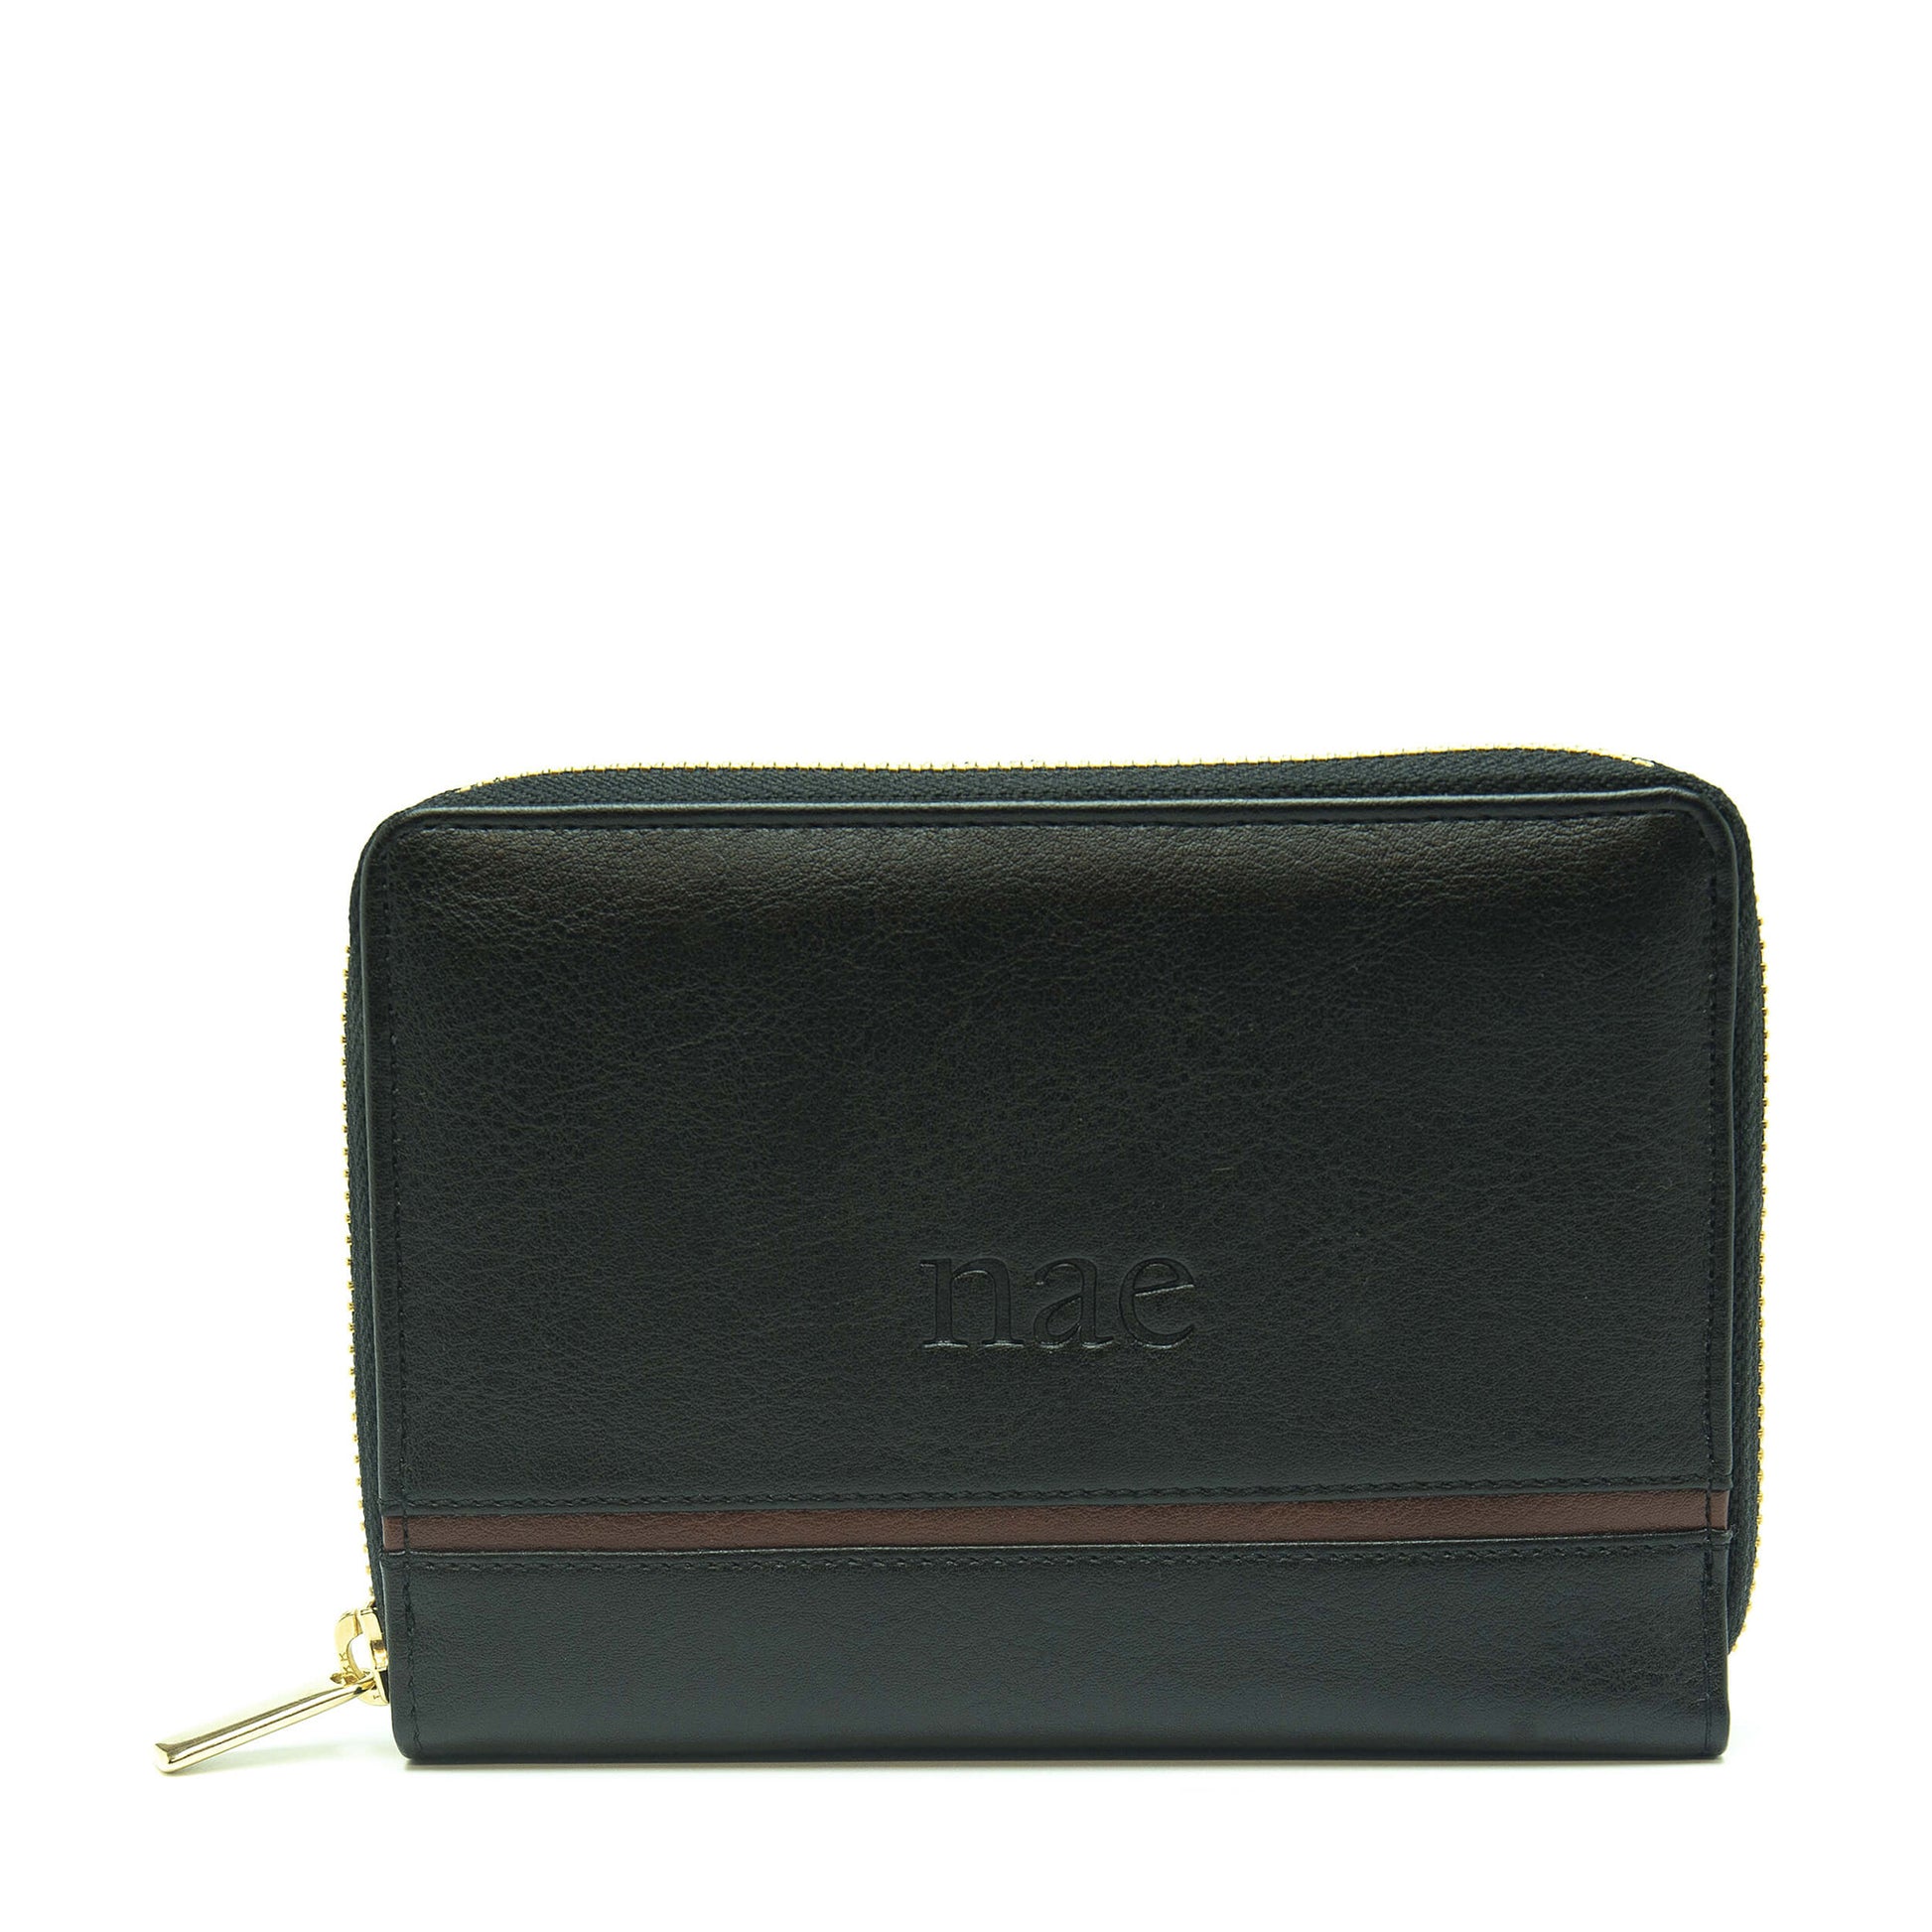 Eva - Black wallet with card slots